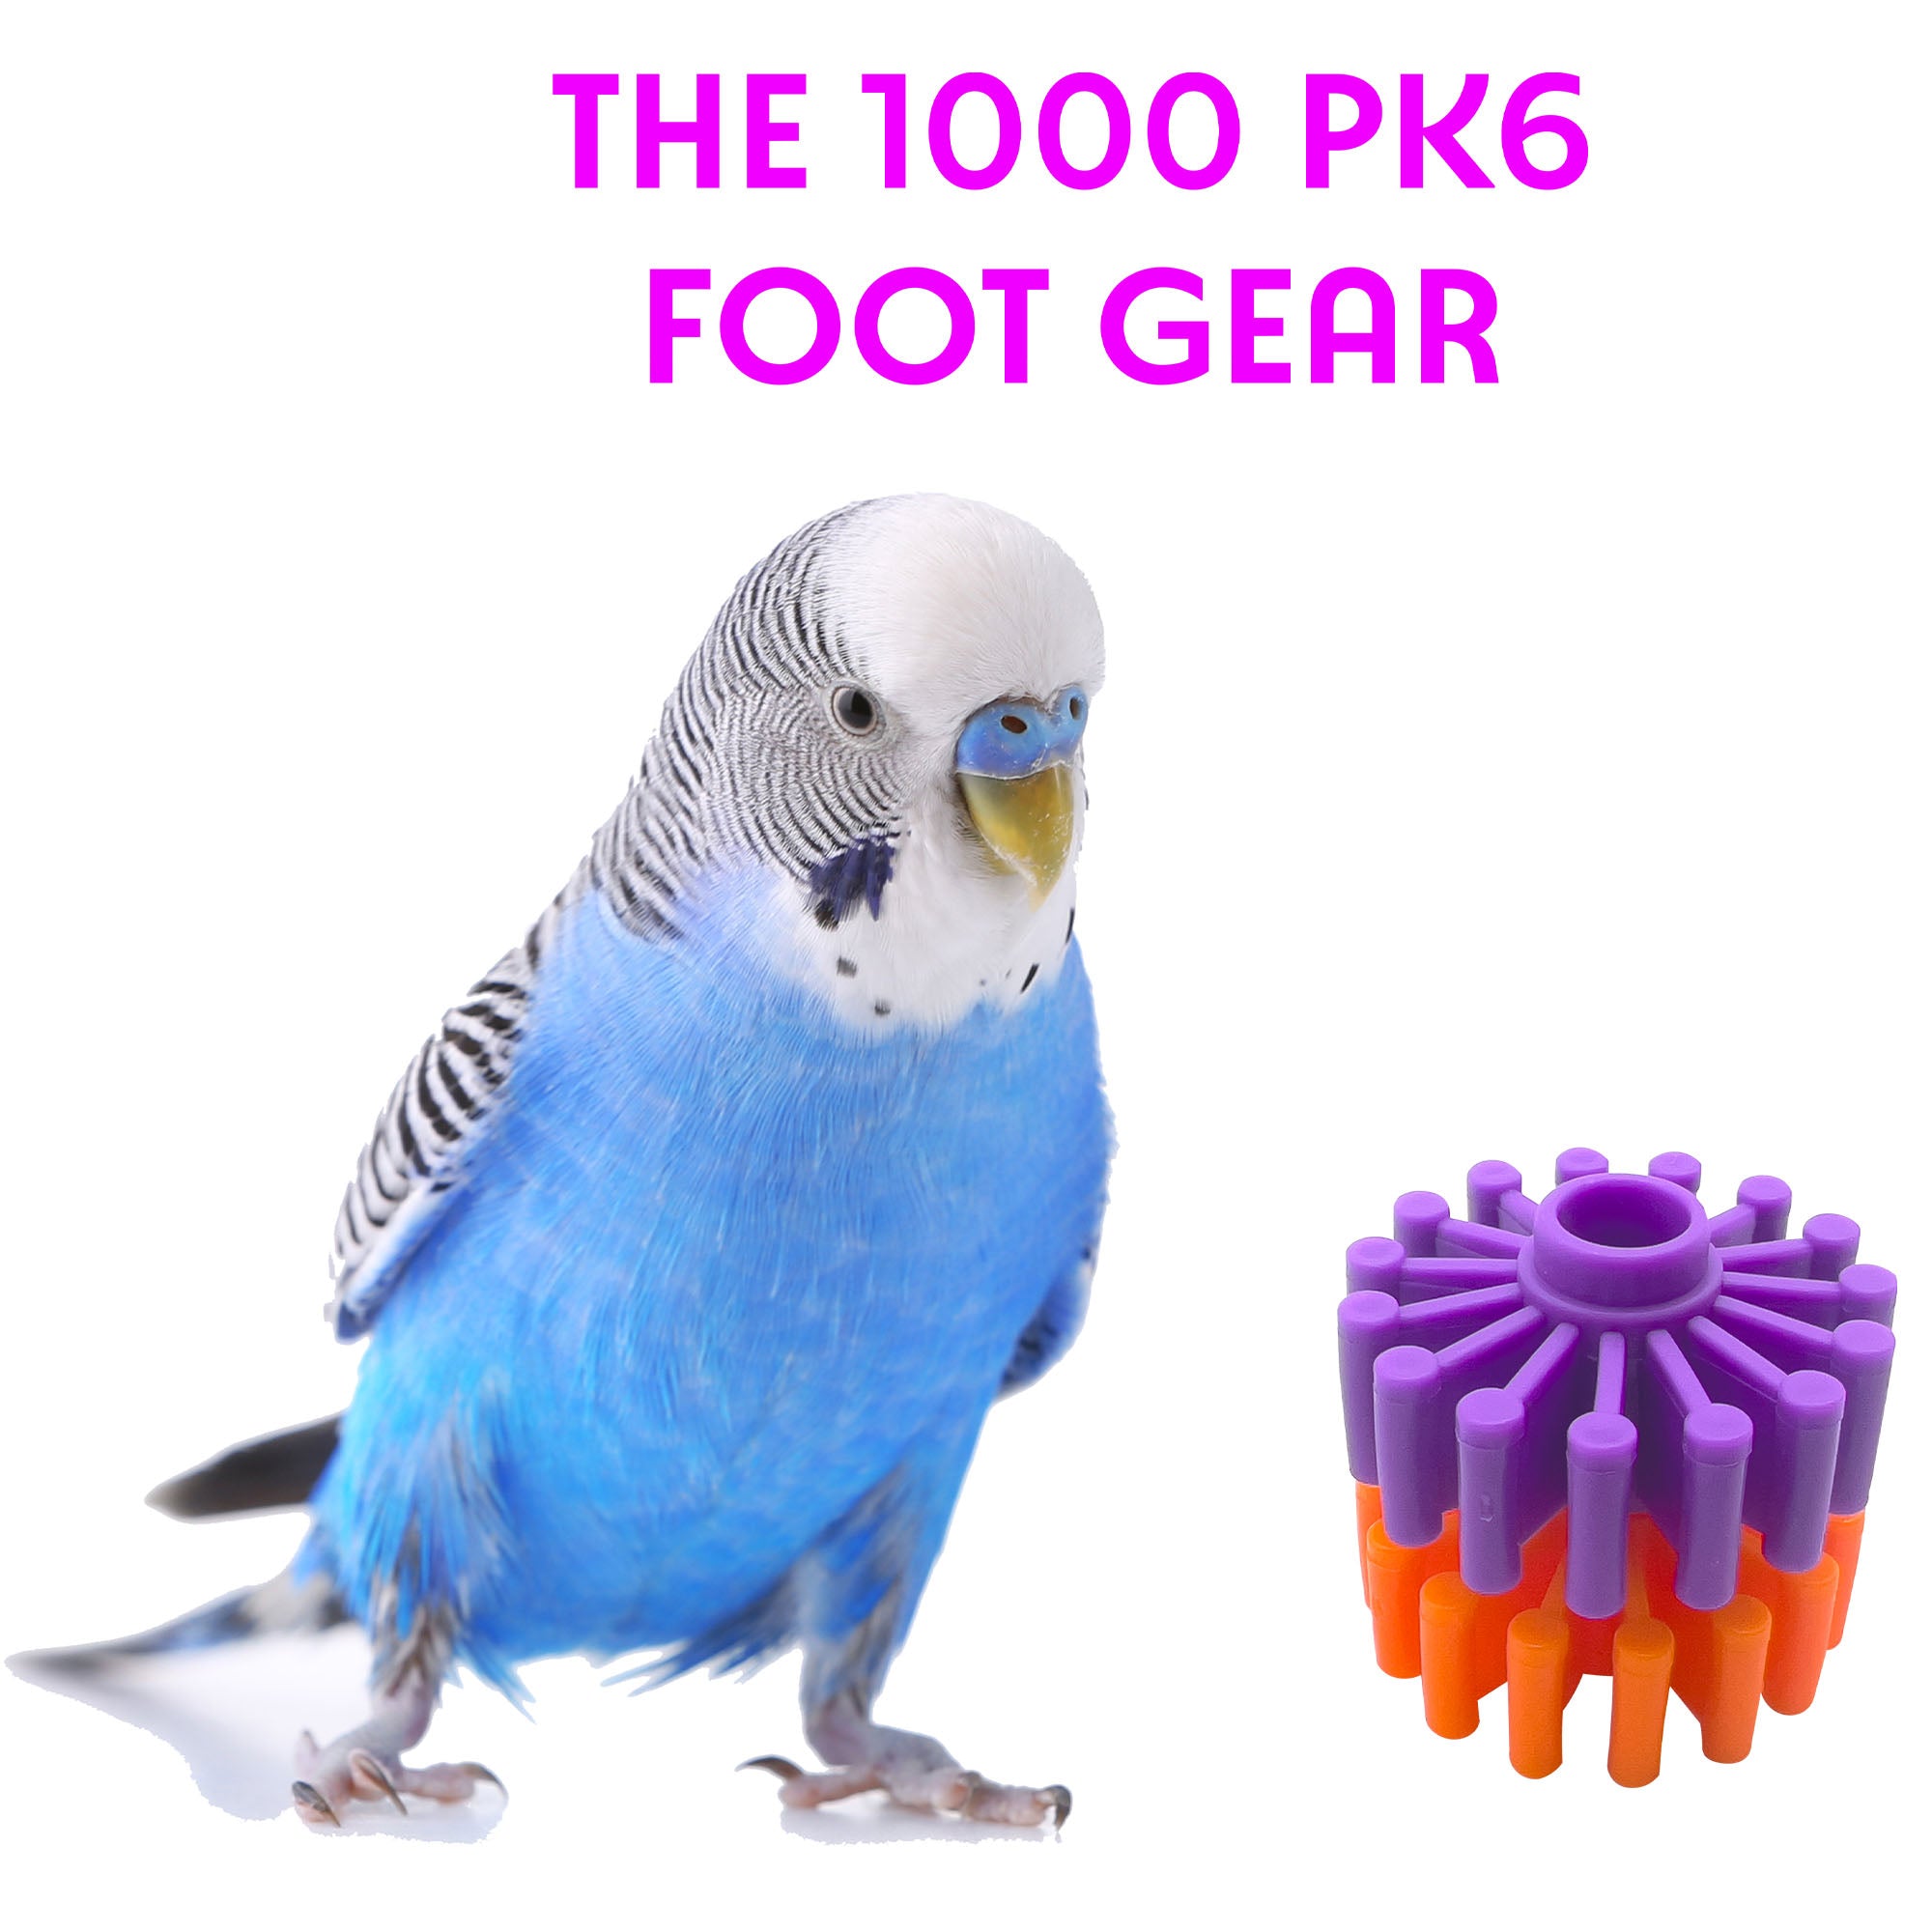 1000 Pk6 Foot Gear